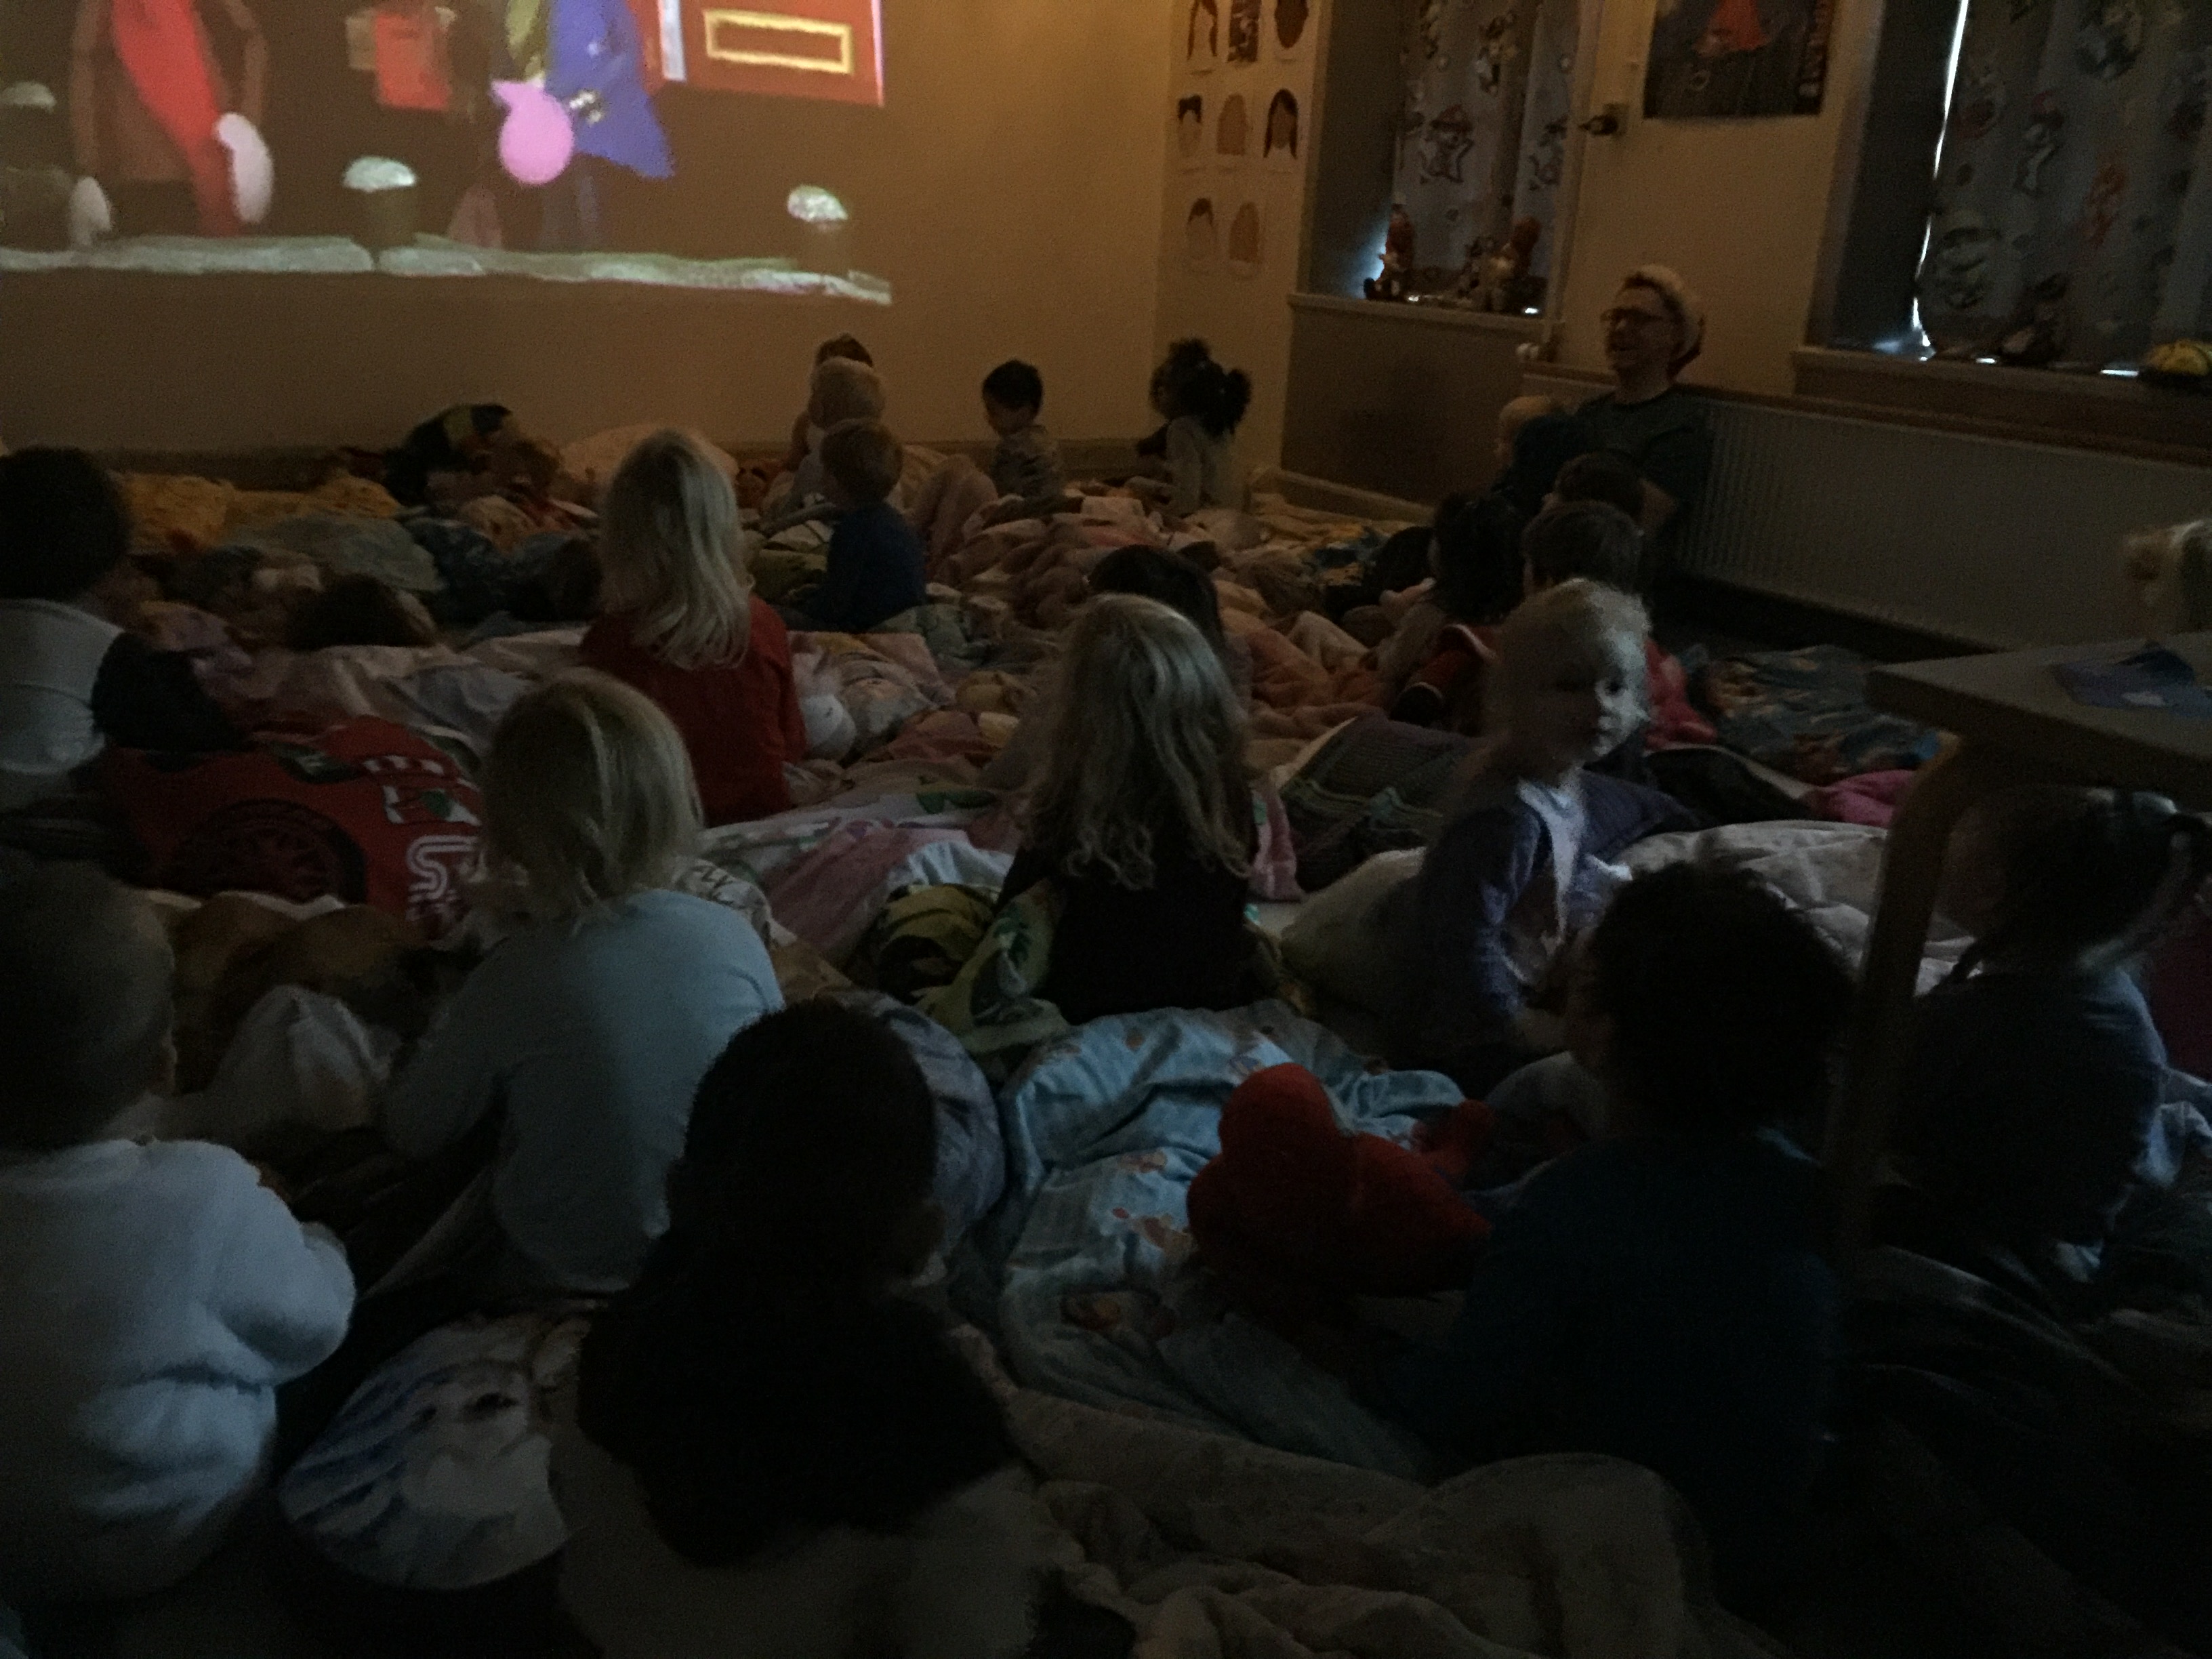 En masse børn sidder i deres dyner på gulvet og ser film på en stor skærm 